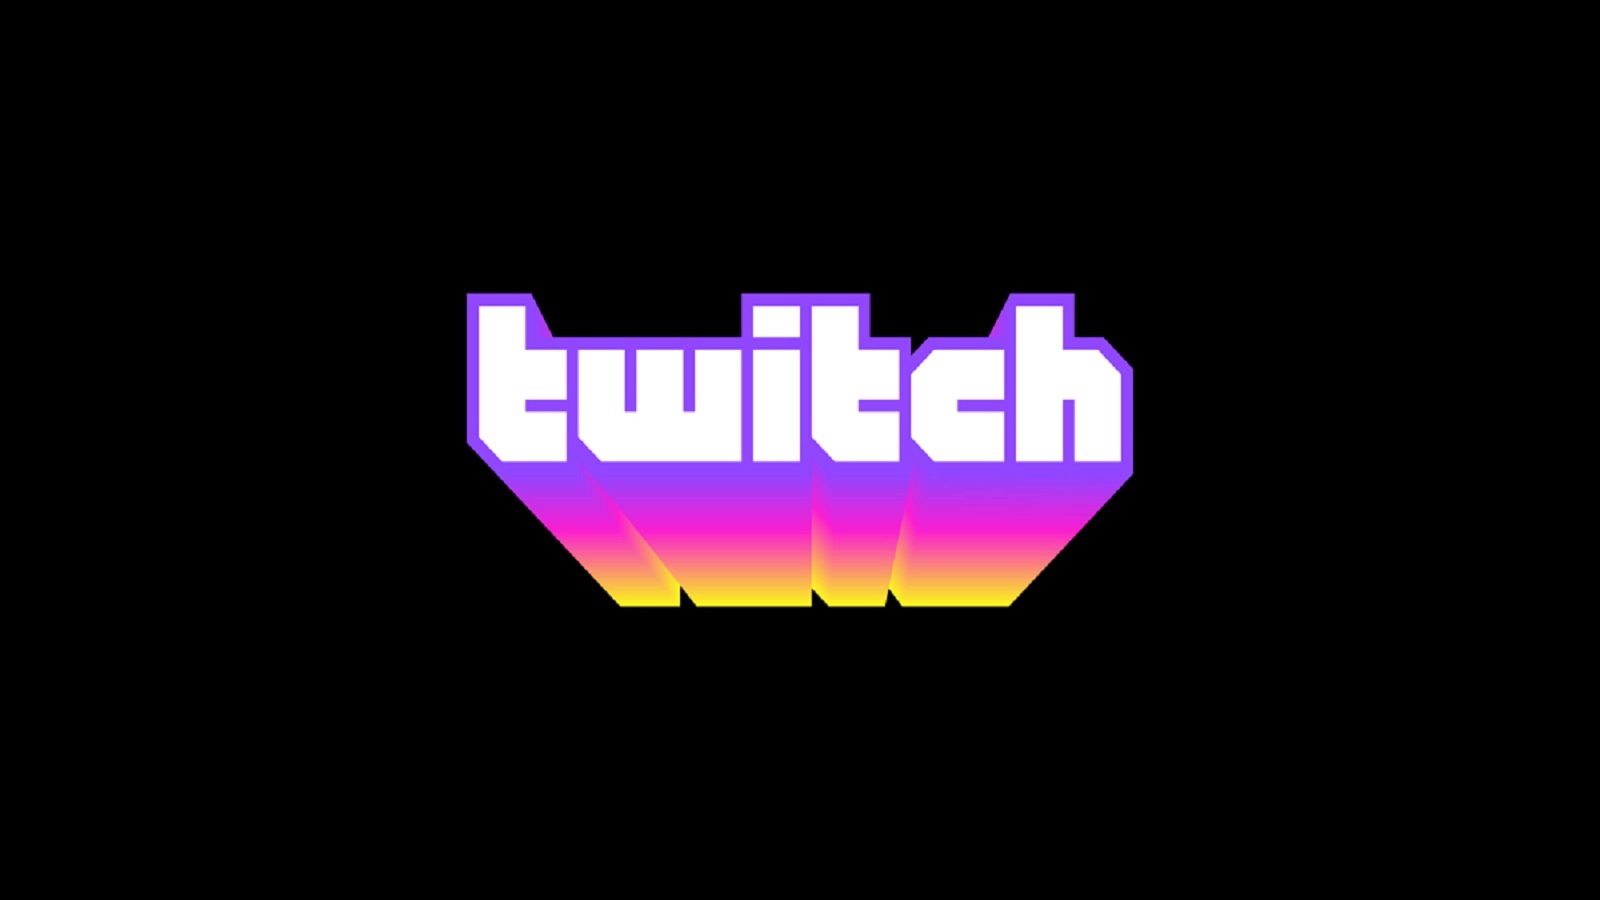 Un'immagine del logo di Twitch visualizzata su uno sfondo nero